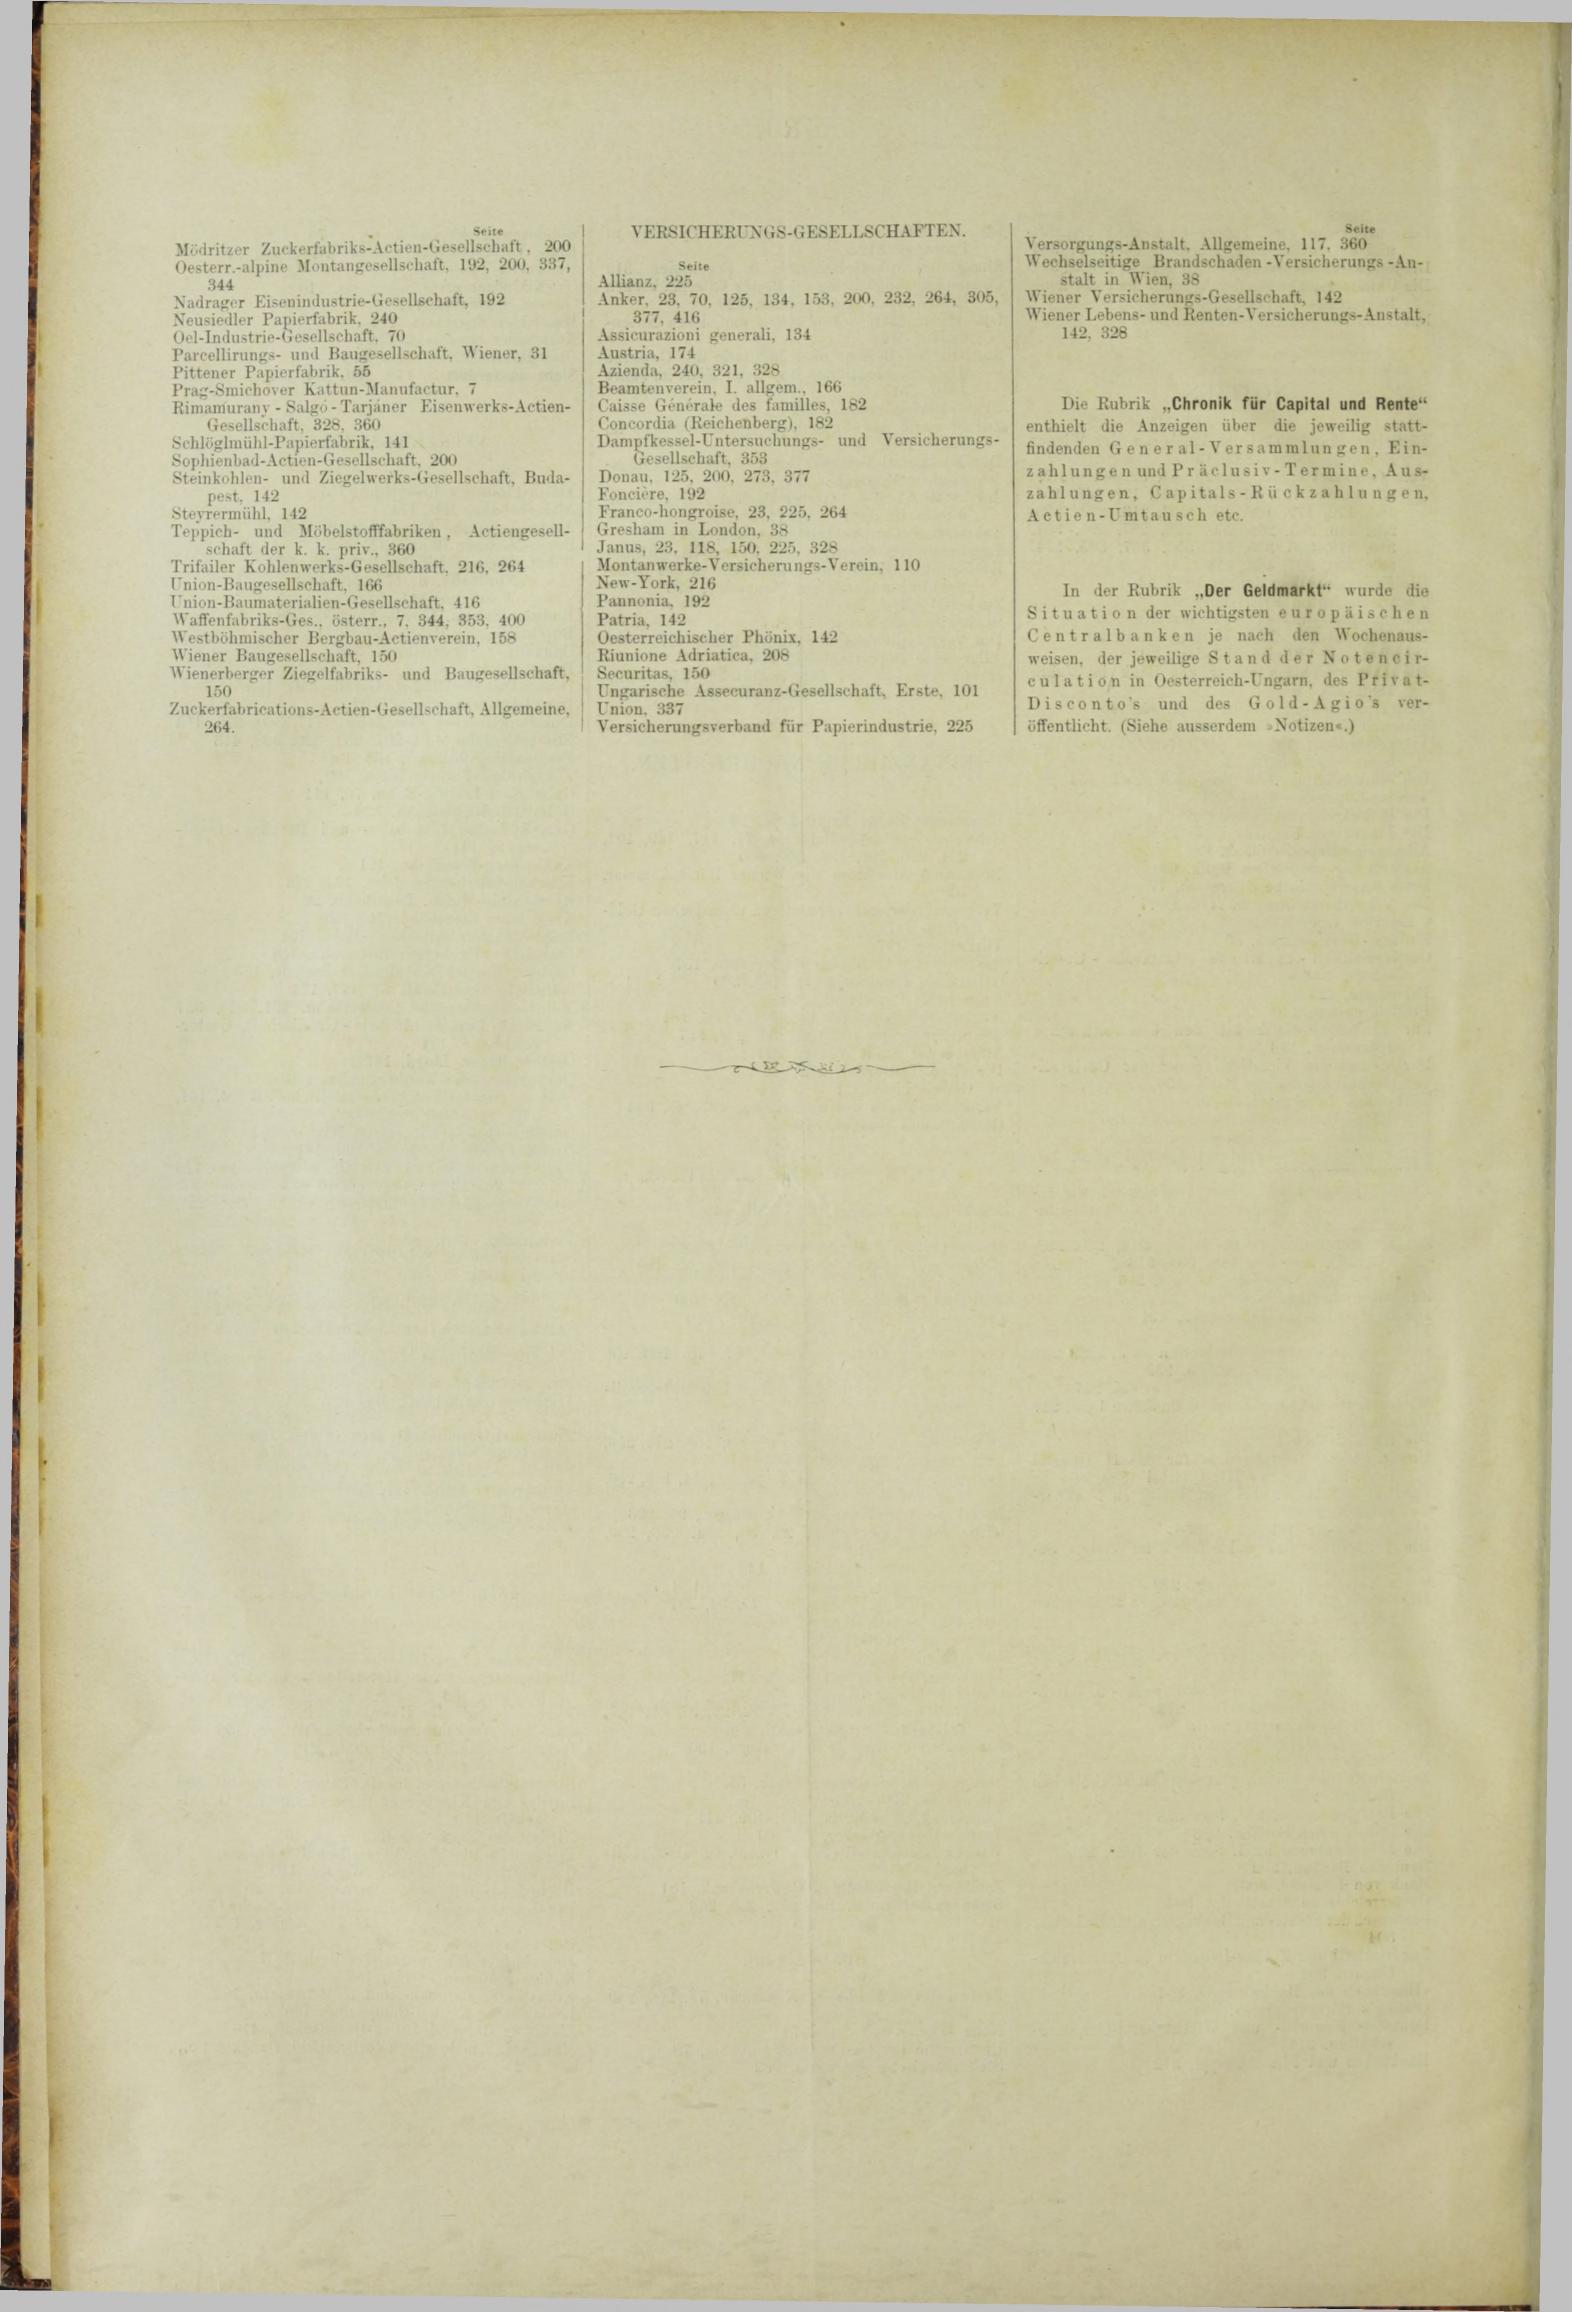 Der Tresor 15.03.1883 - Seite 12